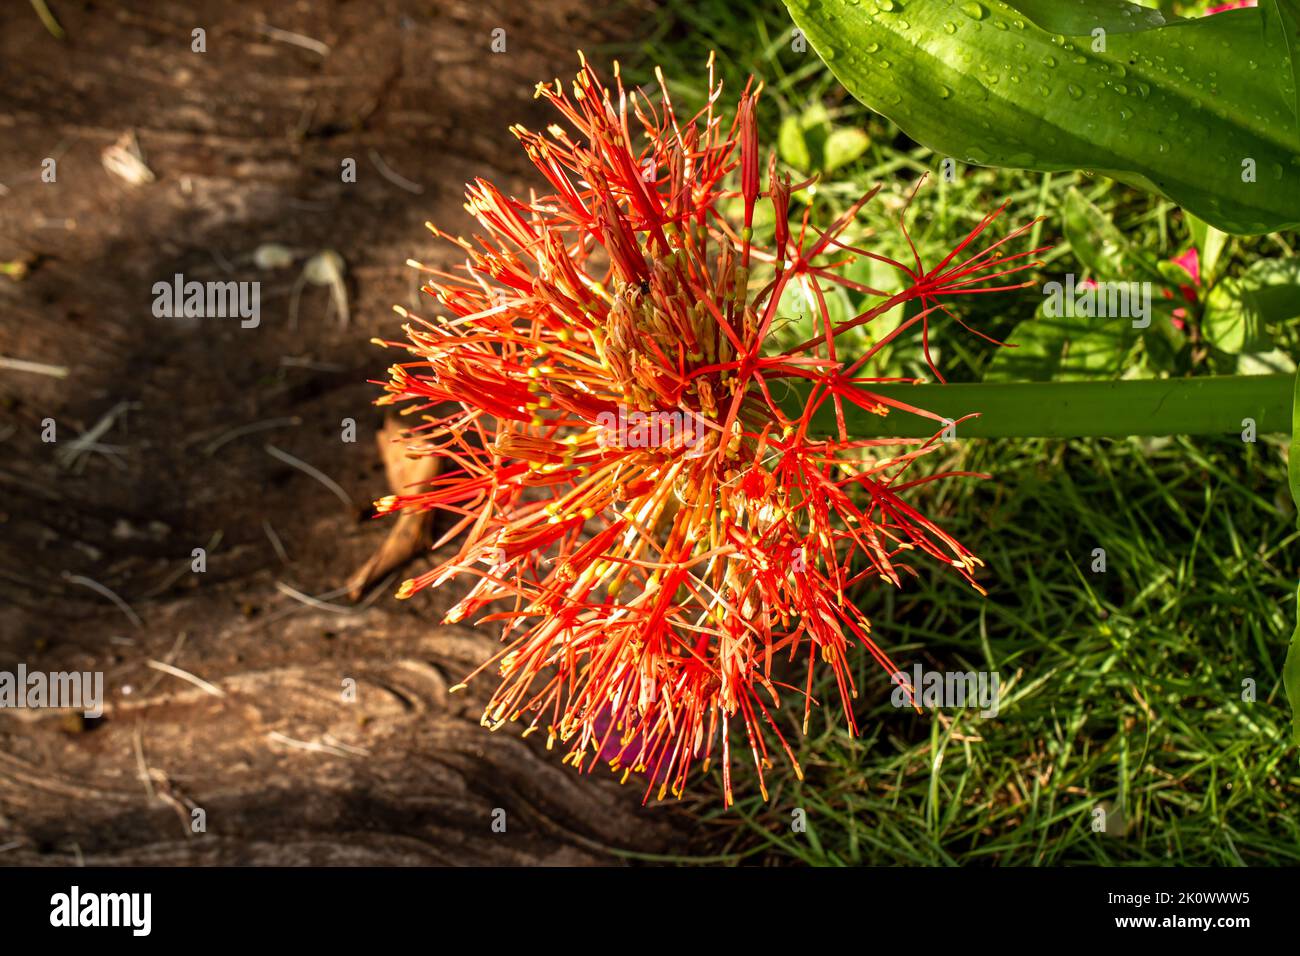 Die blühende Blutsilienpflanze ist in Form einer Kugel mit roter Farbe, grünem Blütenstiel und Gras und Pflasterhintergrund Stockfoto